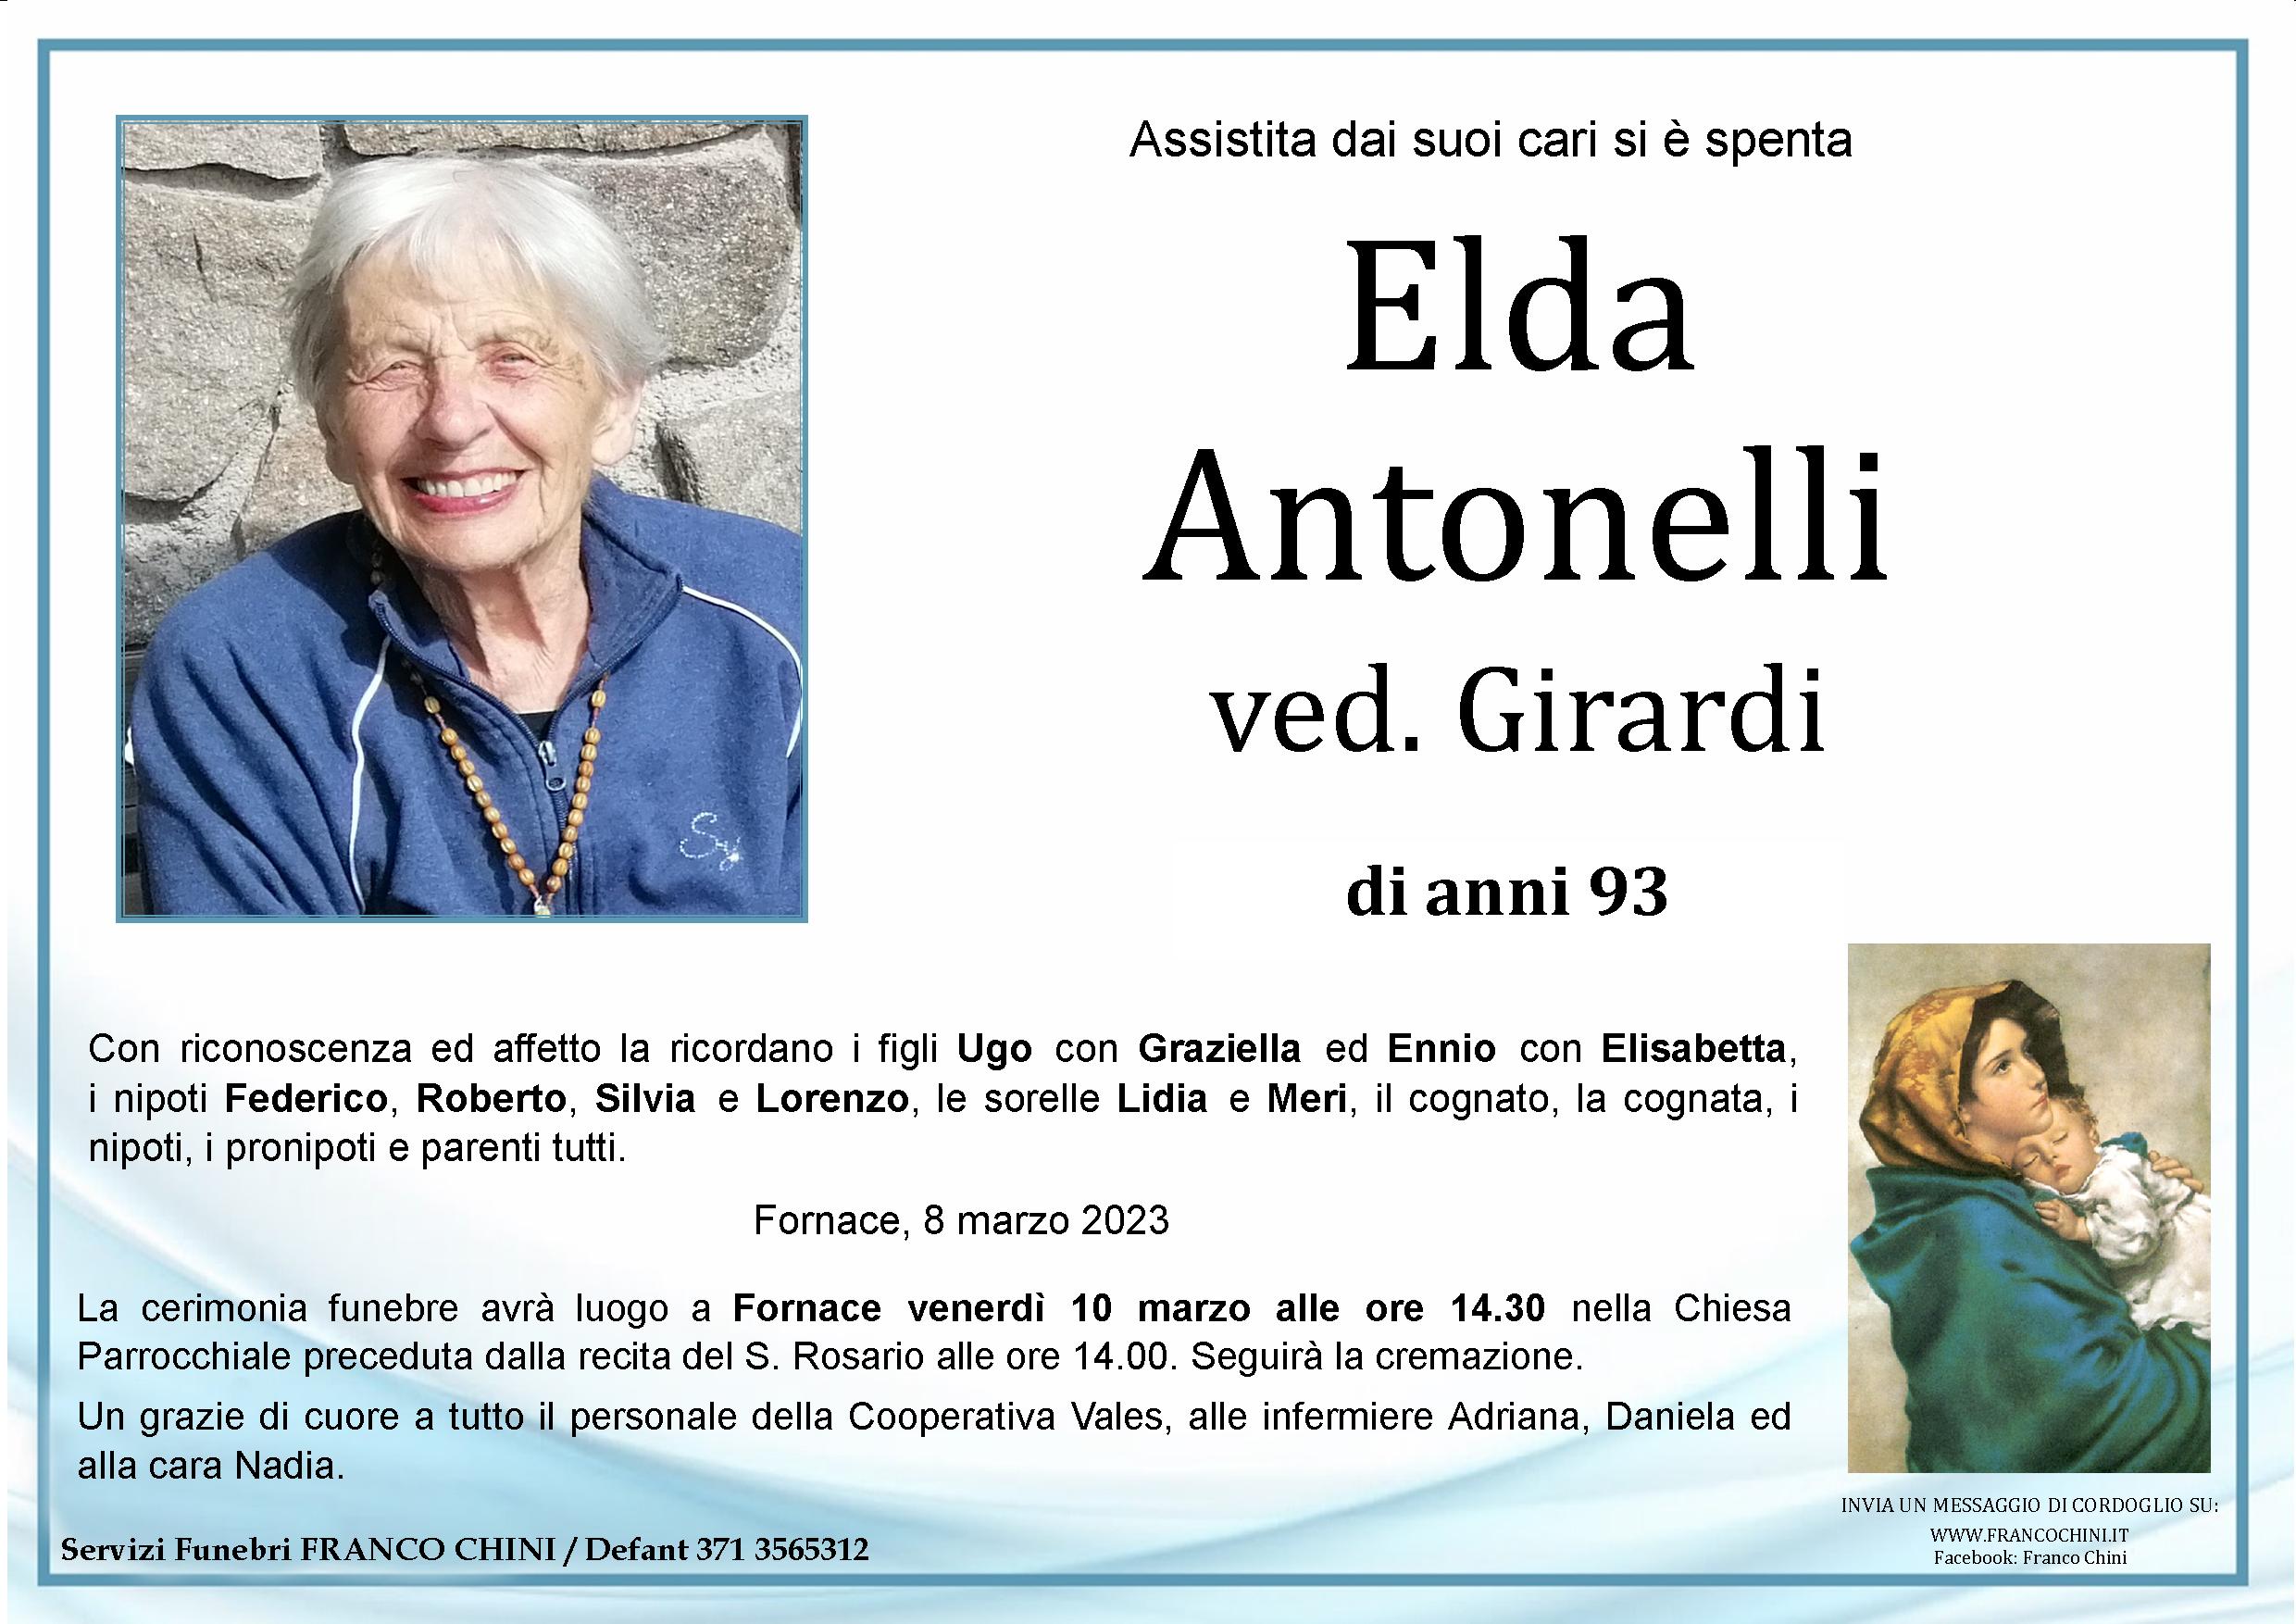 Elda Antonelli